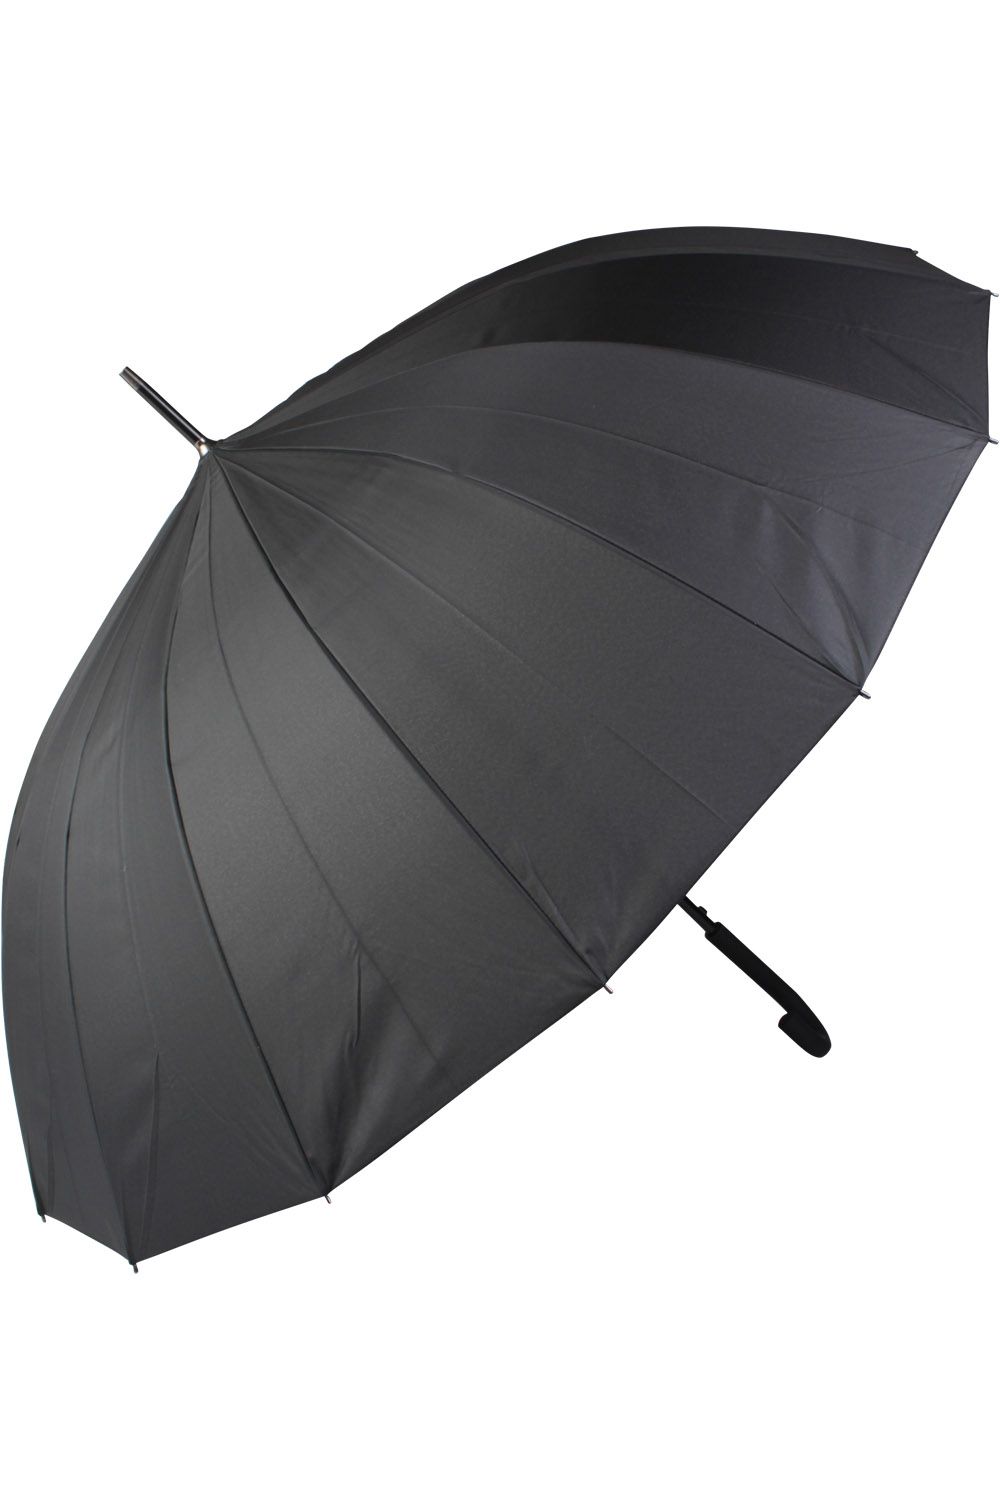 Зонт Multibrand, размер Единый, цвет черный